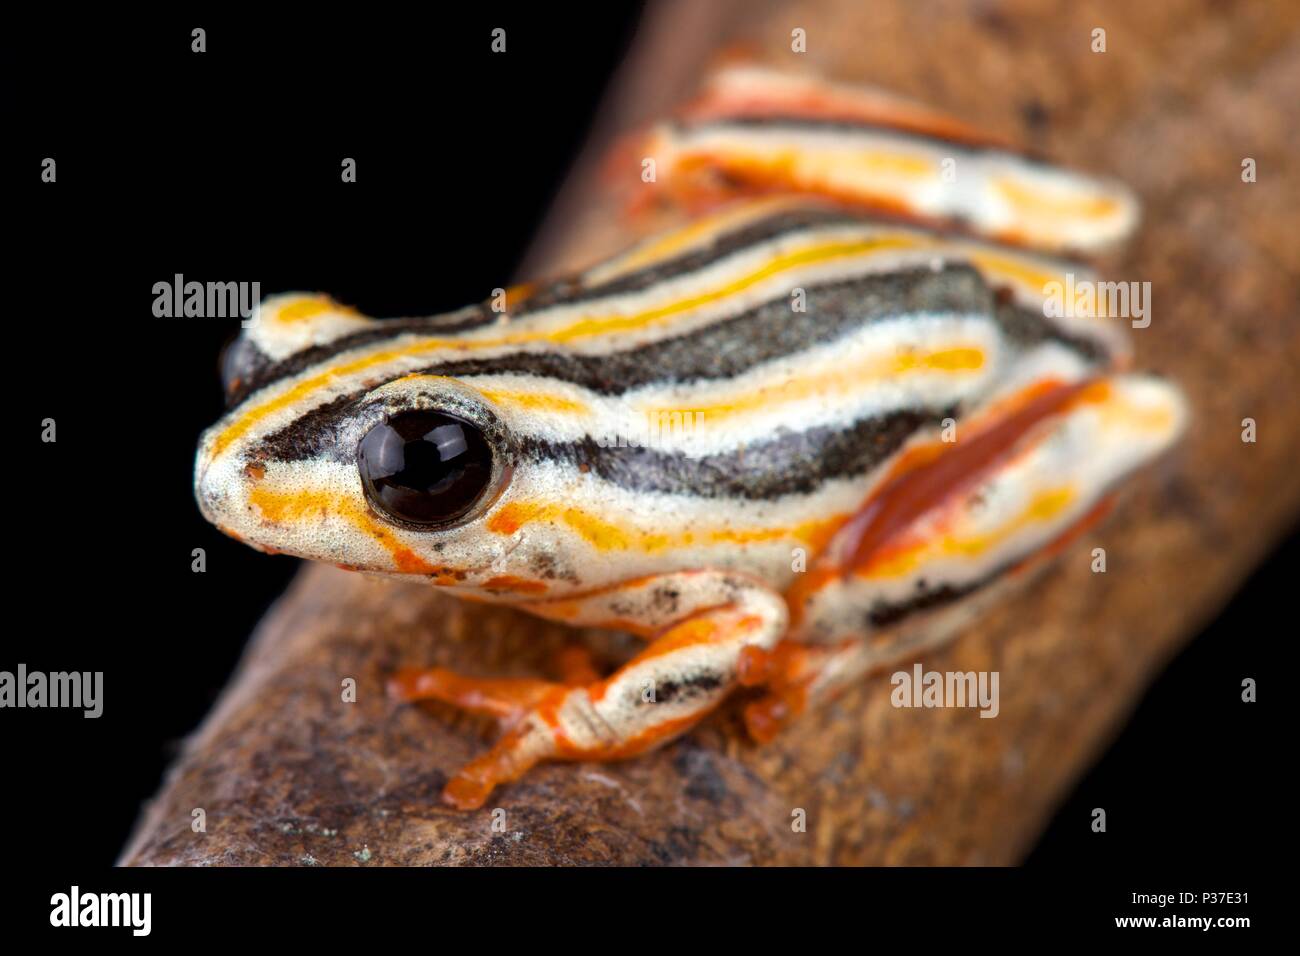 La grenouille reed peint, Hyperolius marmoratus taeniatus, est une espèce de grenouille reed spectaculaires trouvés dans le sud de l'Afrique. Banque D'Images